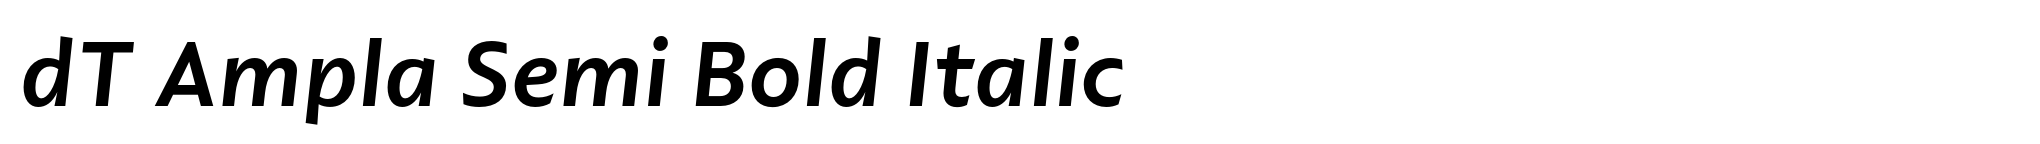 dT Ampla Semi Bold Italic image